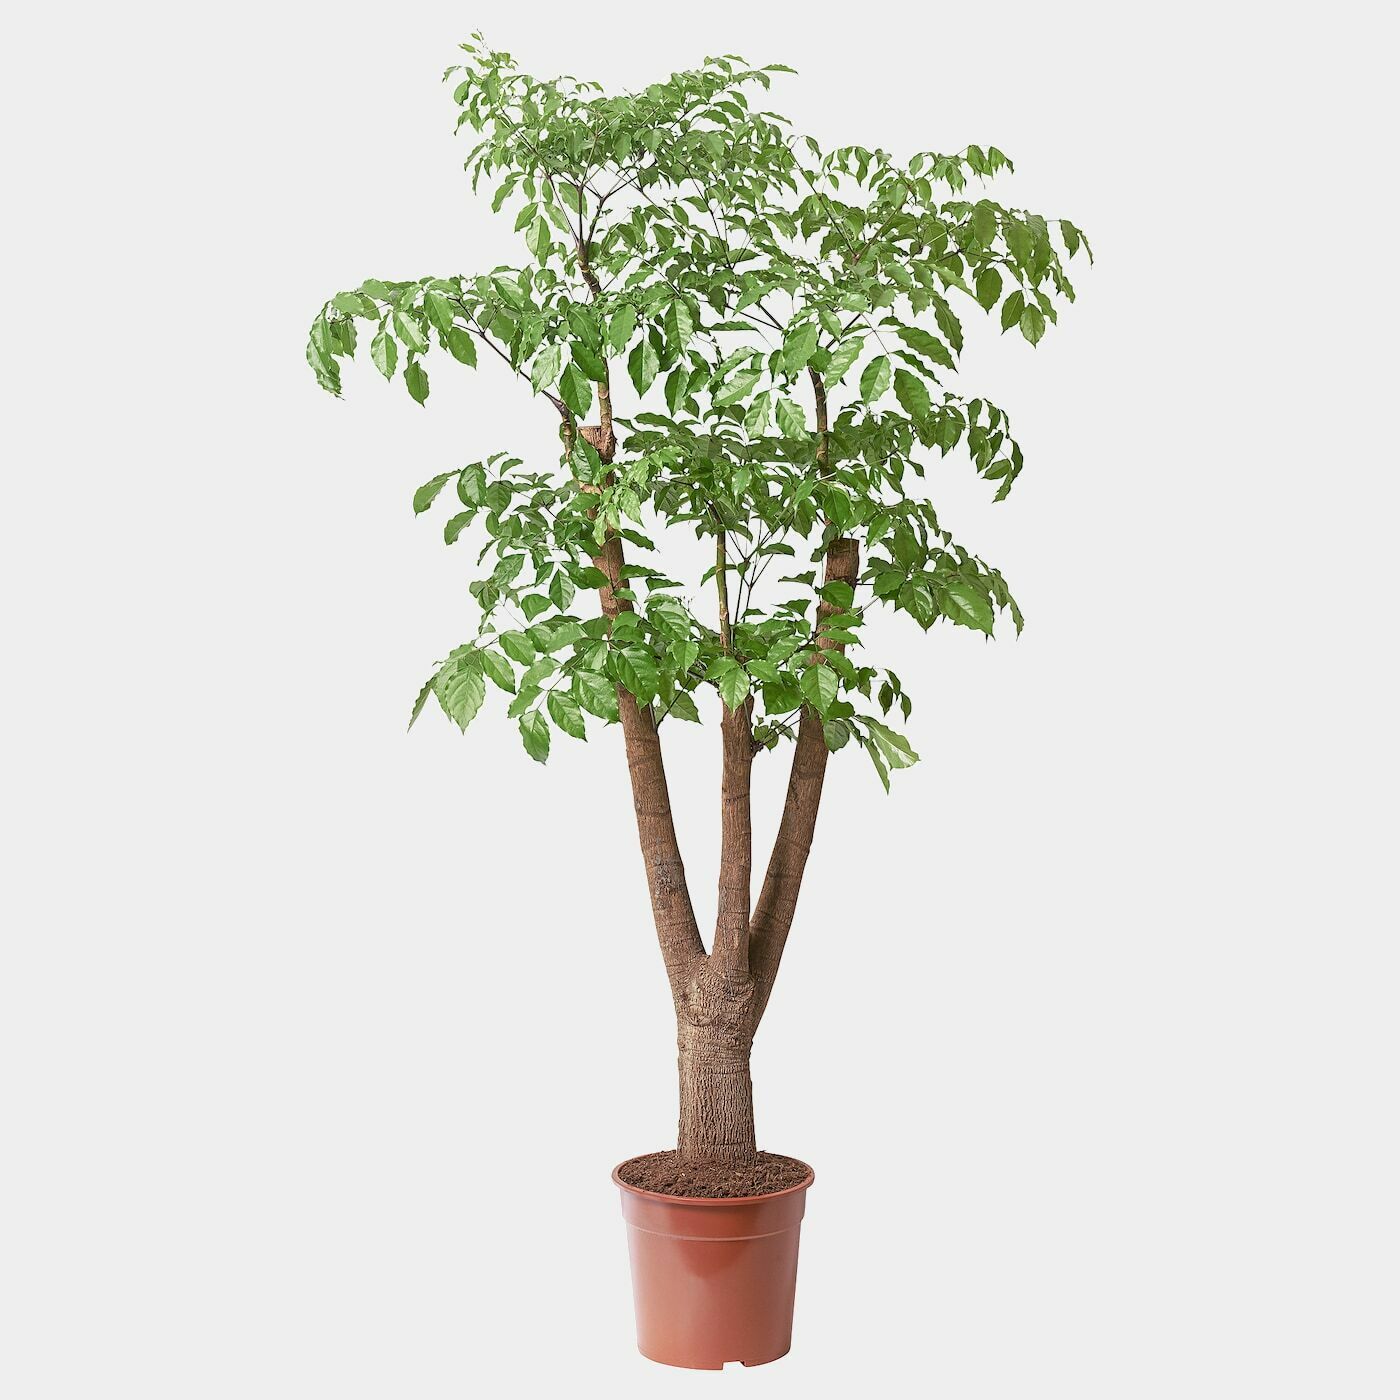 HETEROPANAX CHINENSIS Pflanze  -  - Möbel Ideen für dein Zuhause von Home Trends. Möbel Trends von Social Media Influencer für dein Skandi Zuhause.